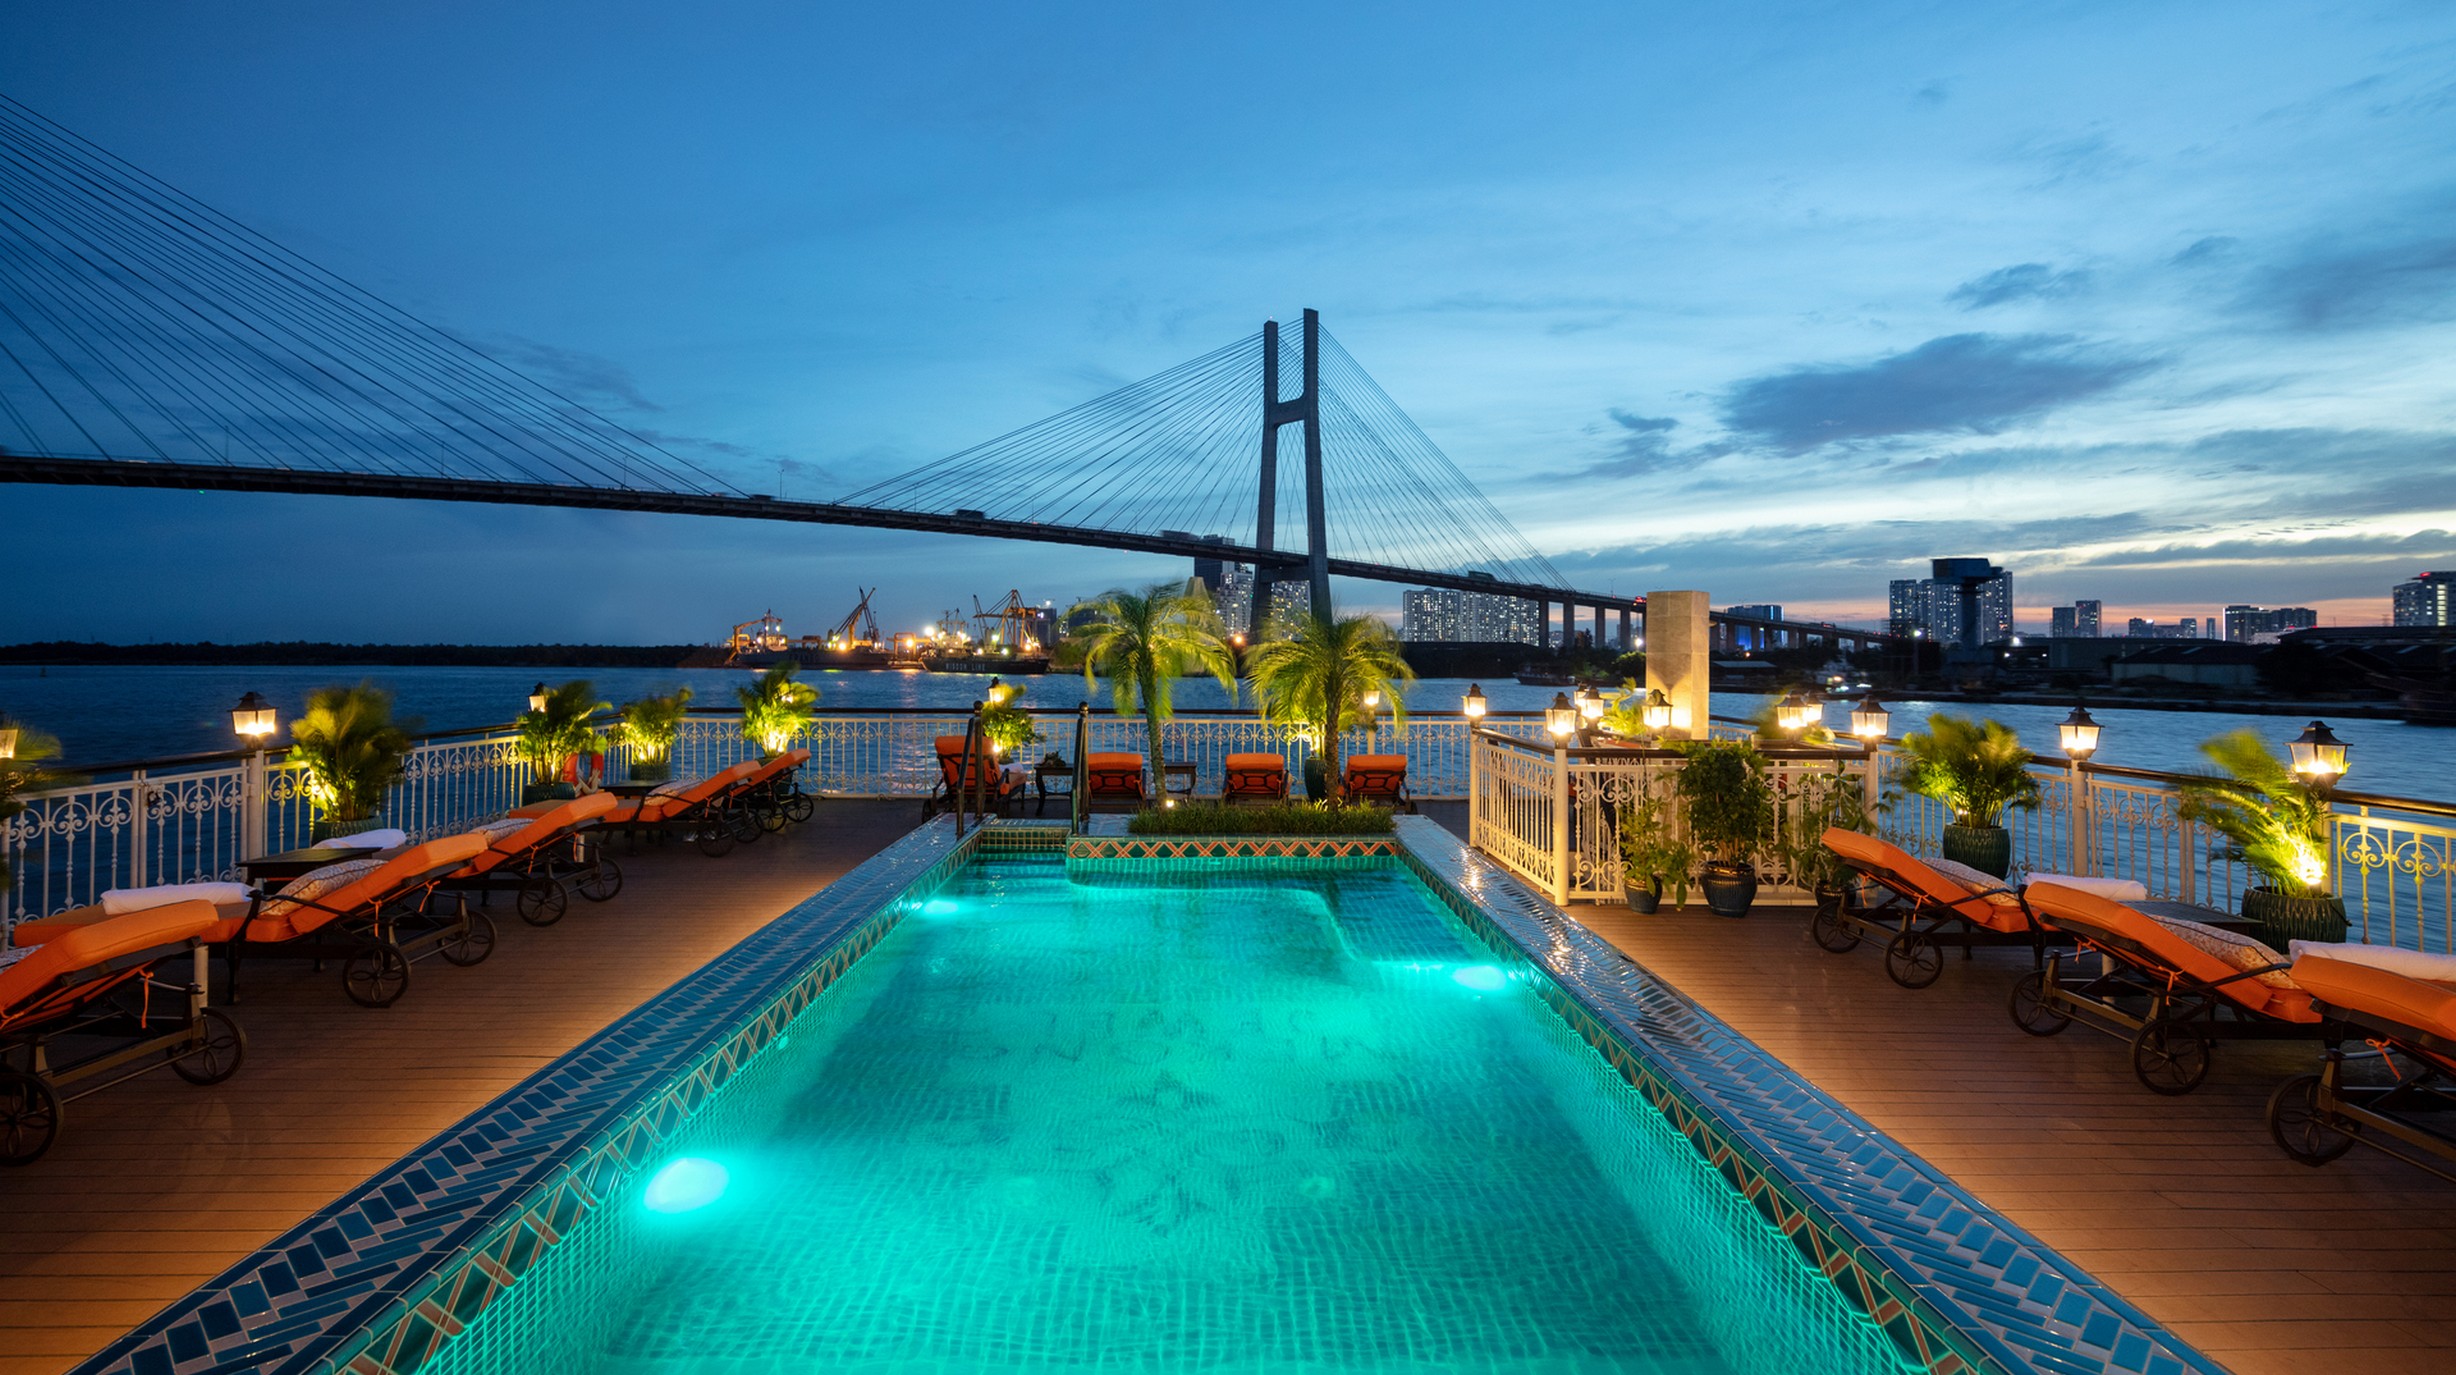 Luxe riviercruise over de Mekong met 5-sterren luxe hotelschip